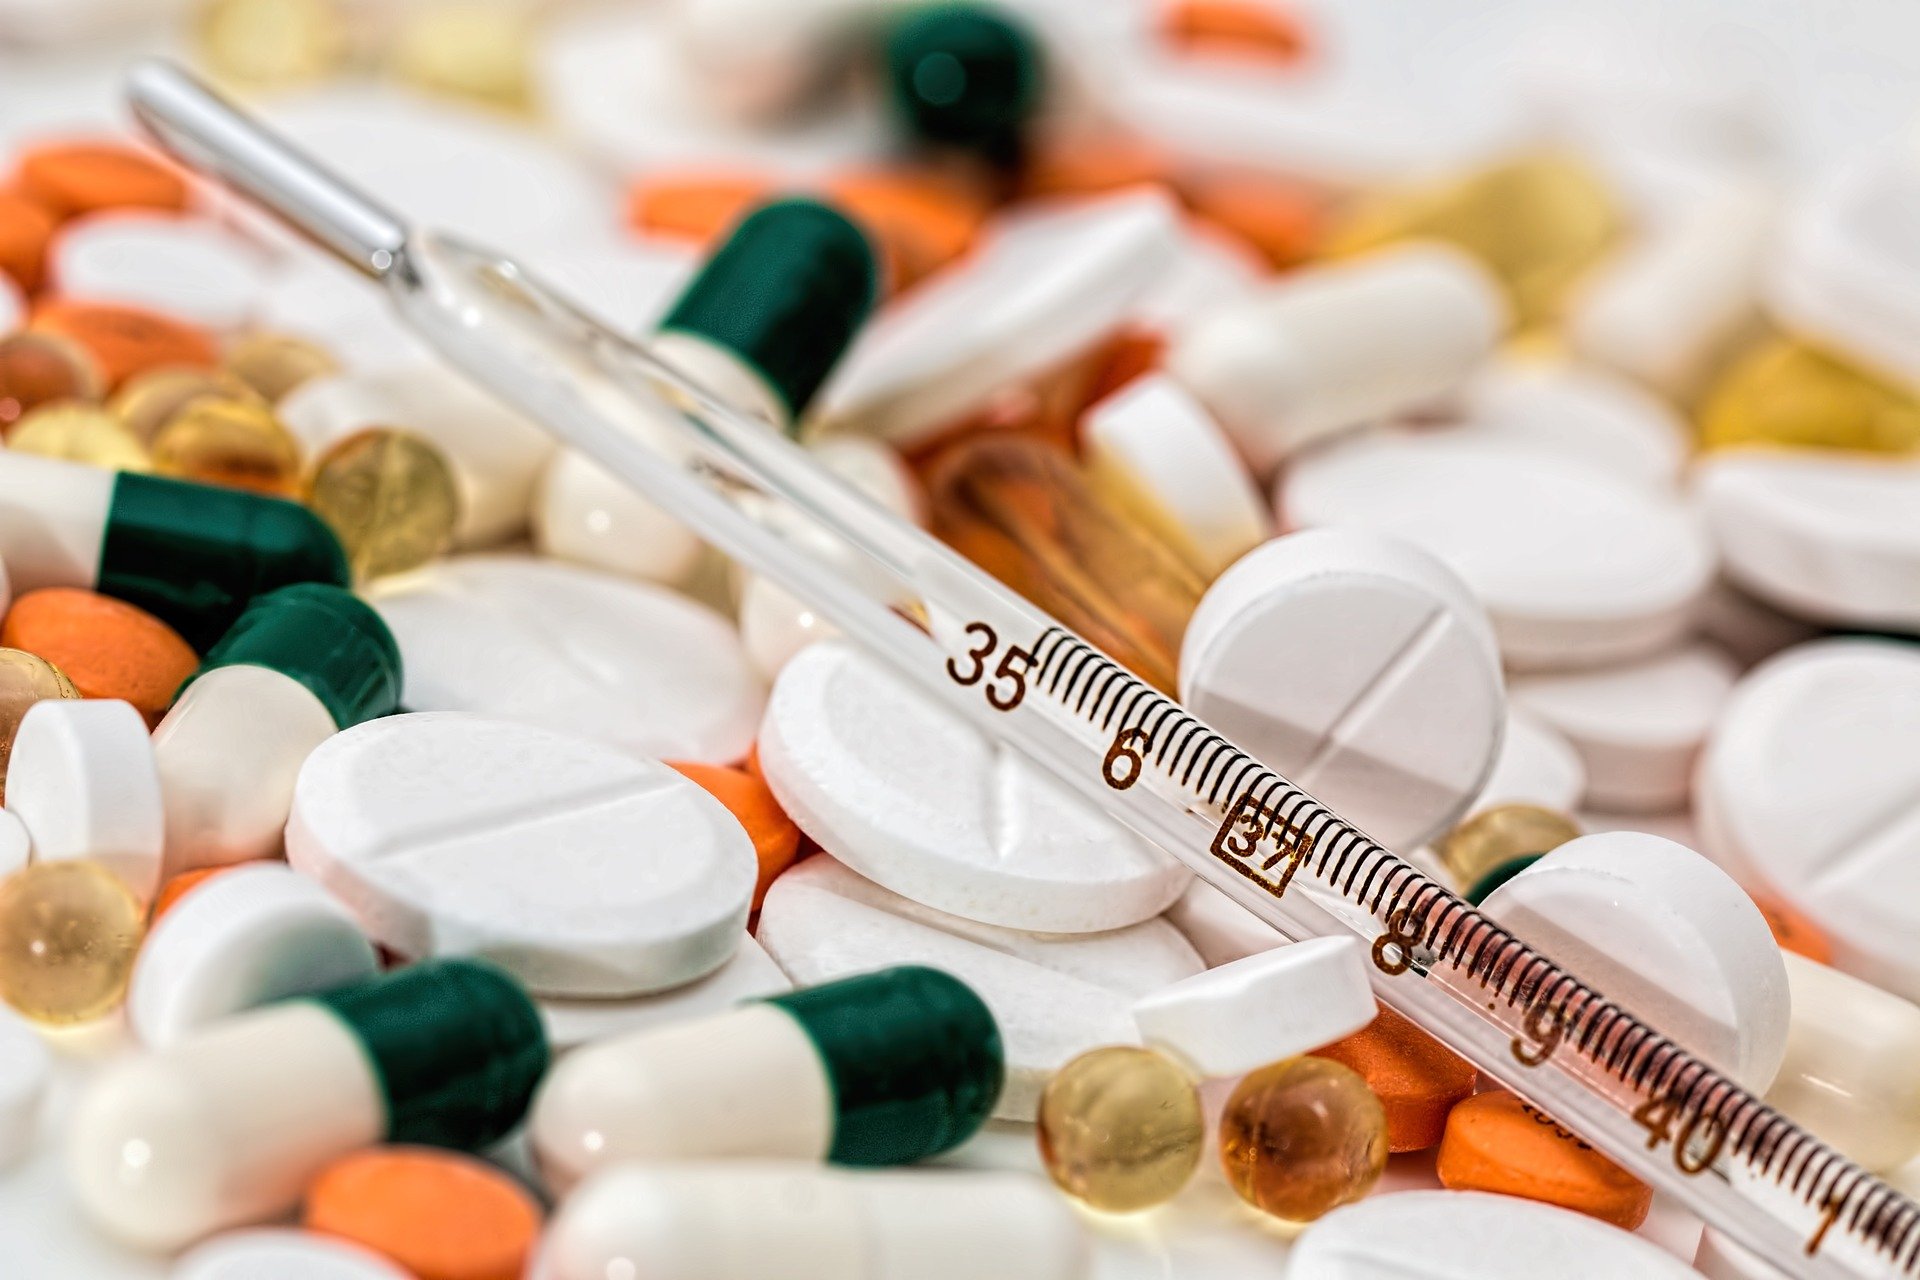 منظمة الصحة العالمية: أدوية شائعة لعلاج "كوفيد-19" خيبت الآمال